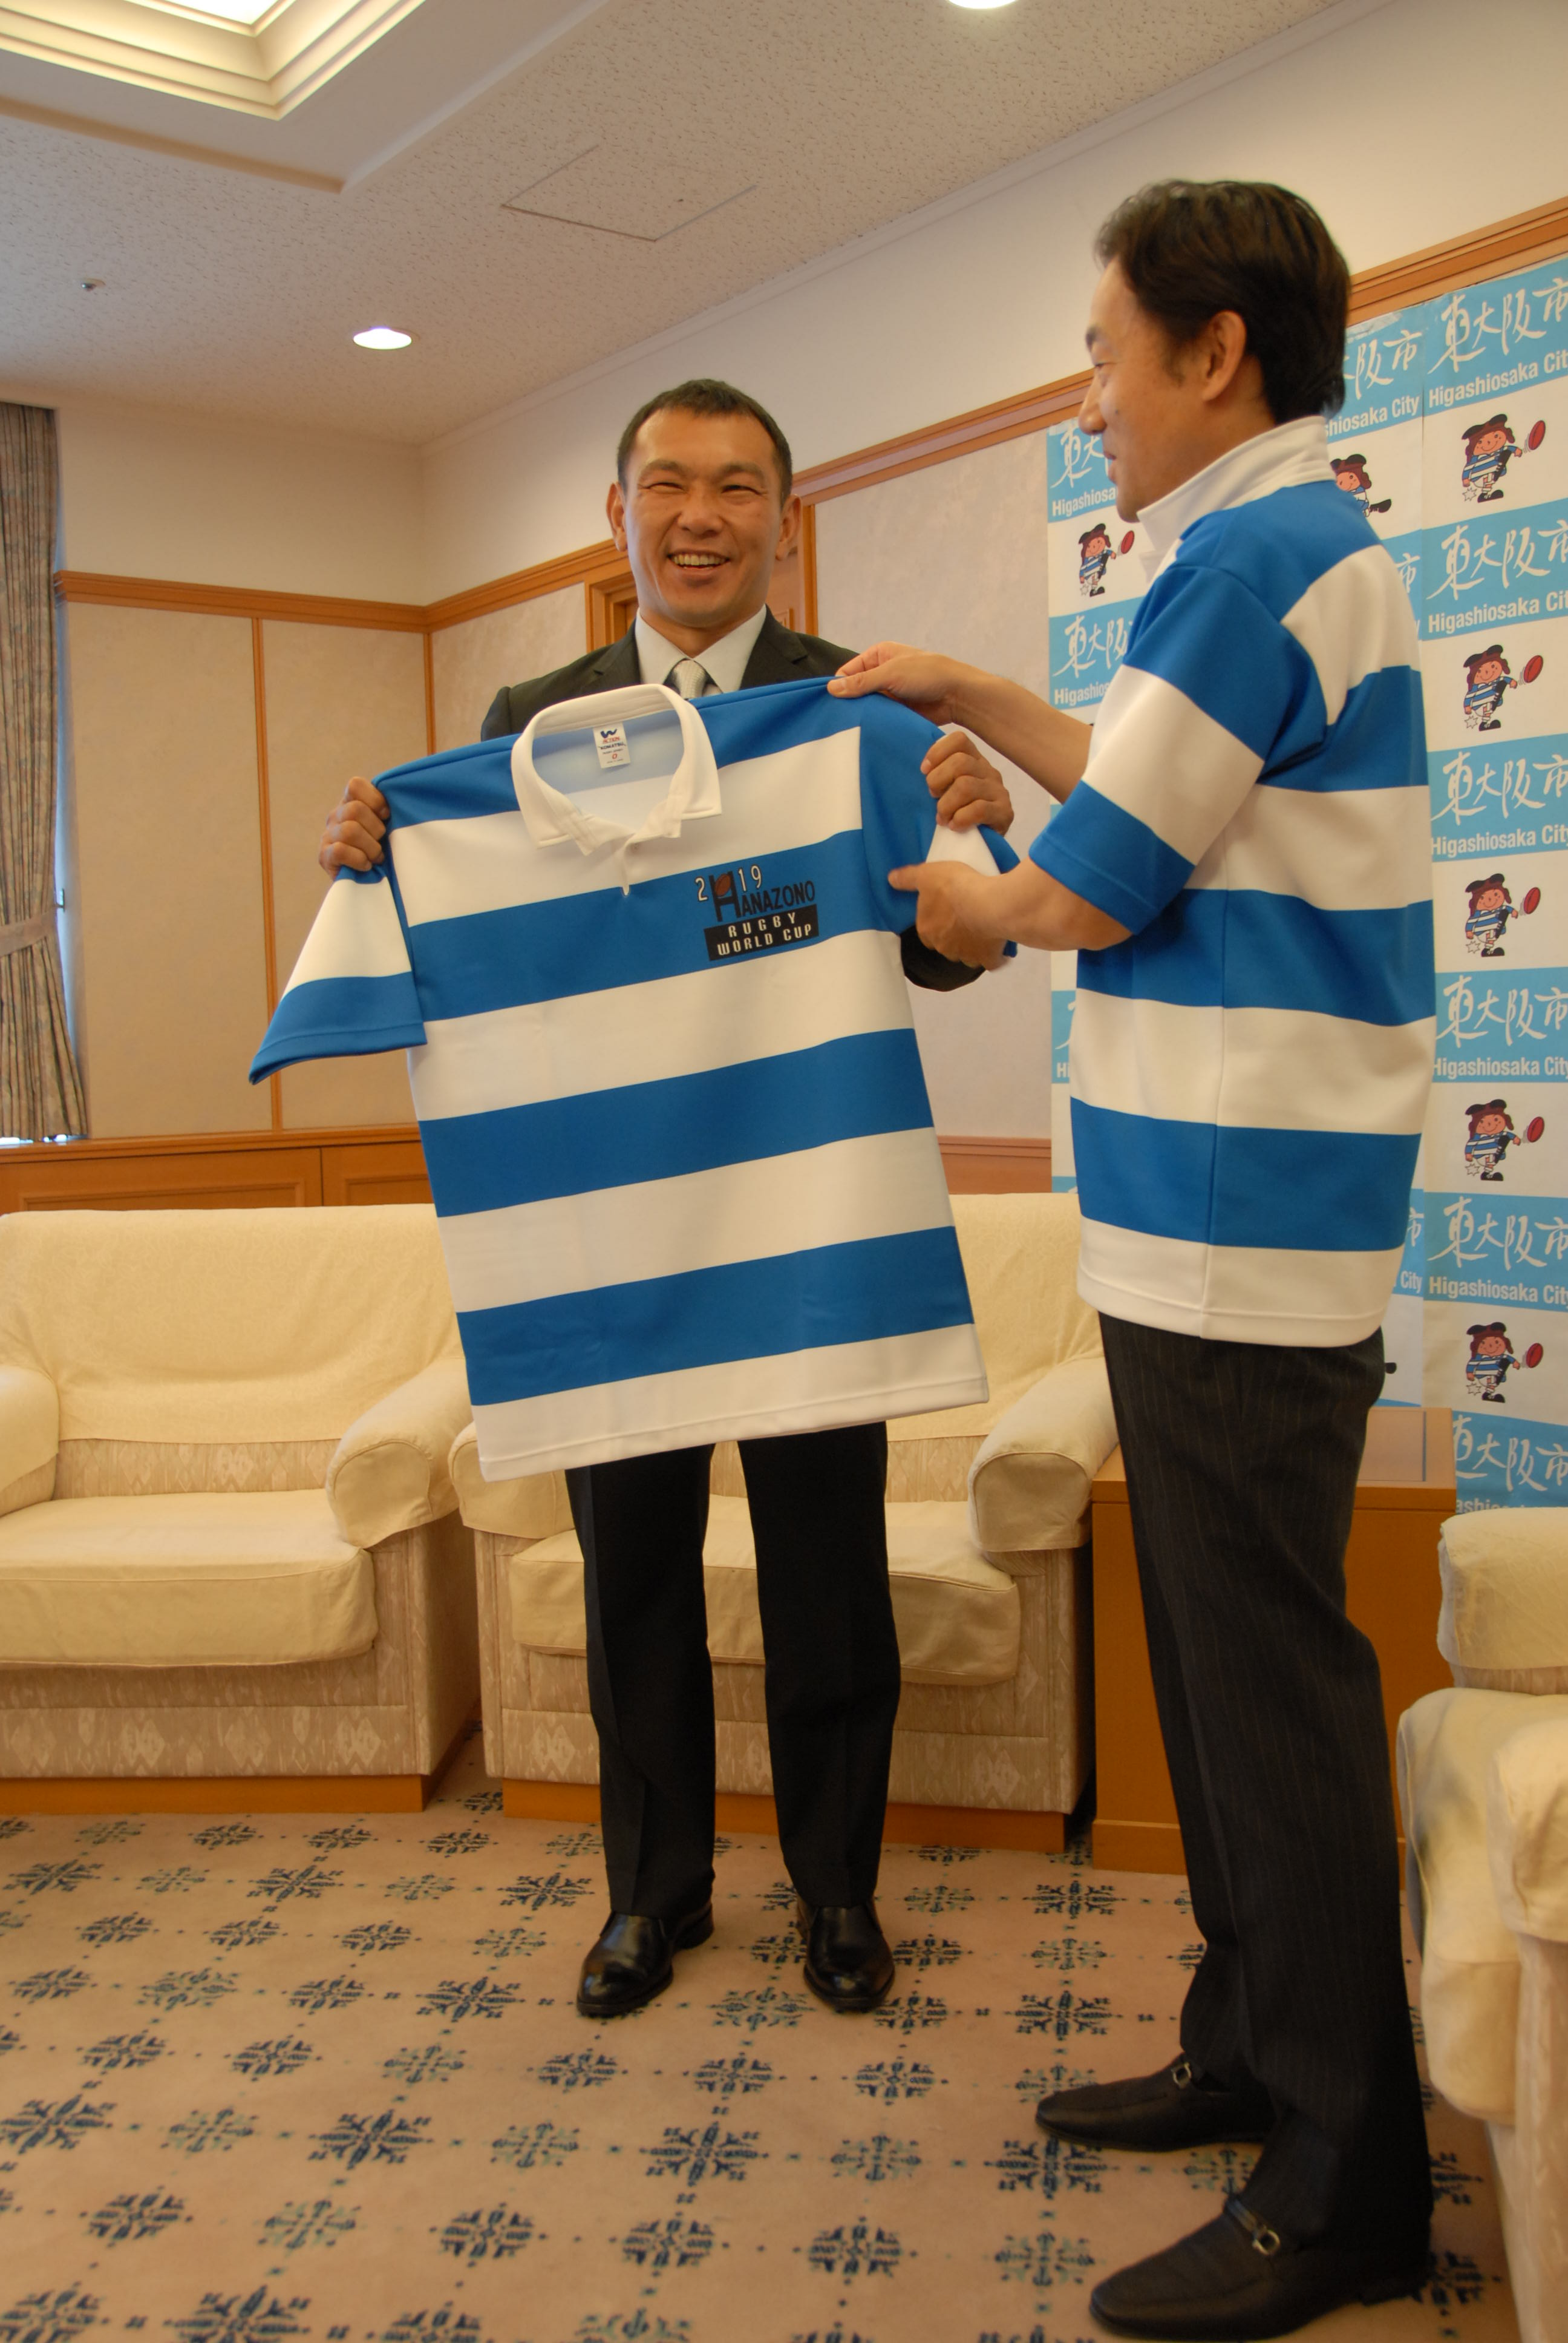 市長が元木由記雄さんにラガーシャツを渡している様子